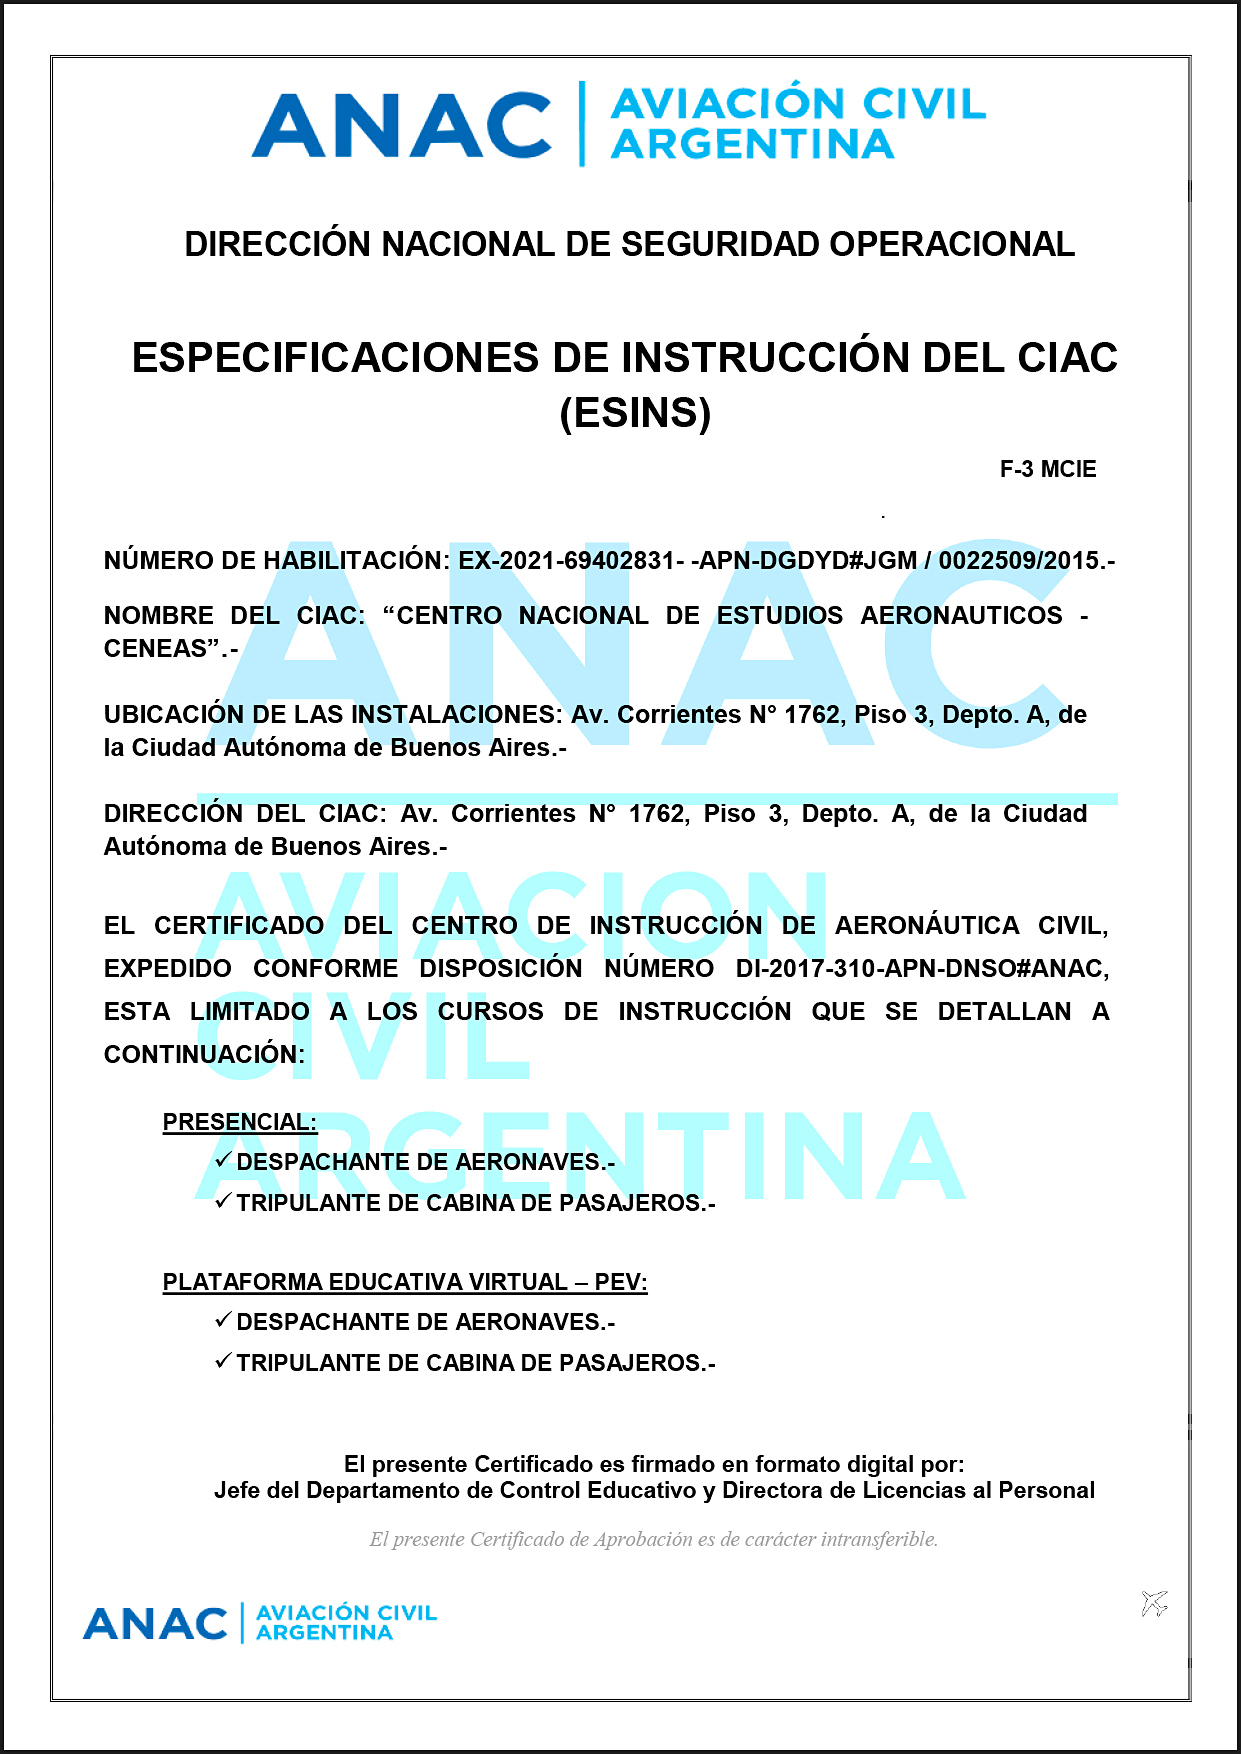 Especificaciones de Instrucción del CIAC (EINS)